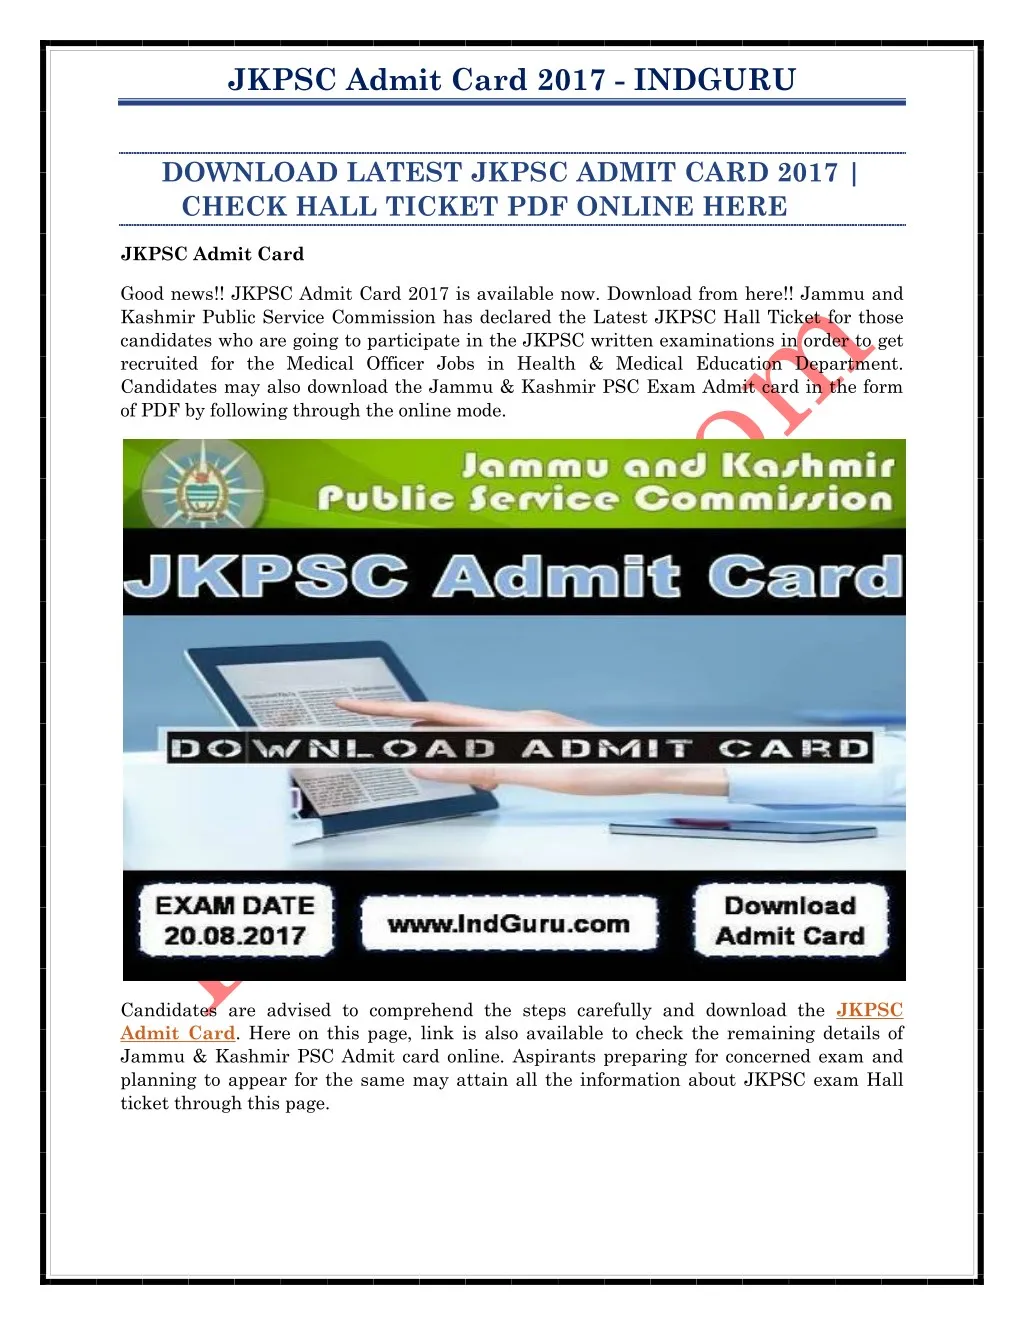 jkpsc admit card 2017 indguru